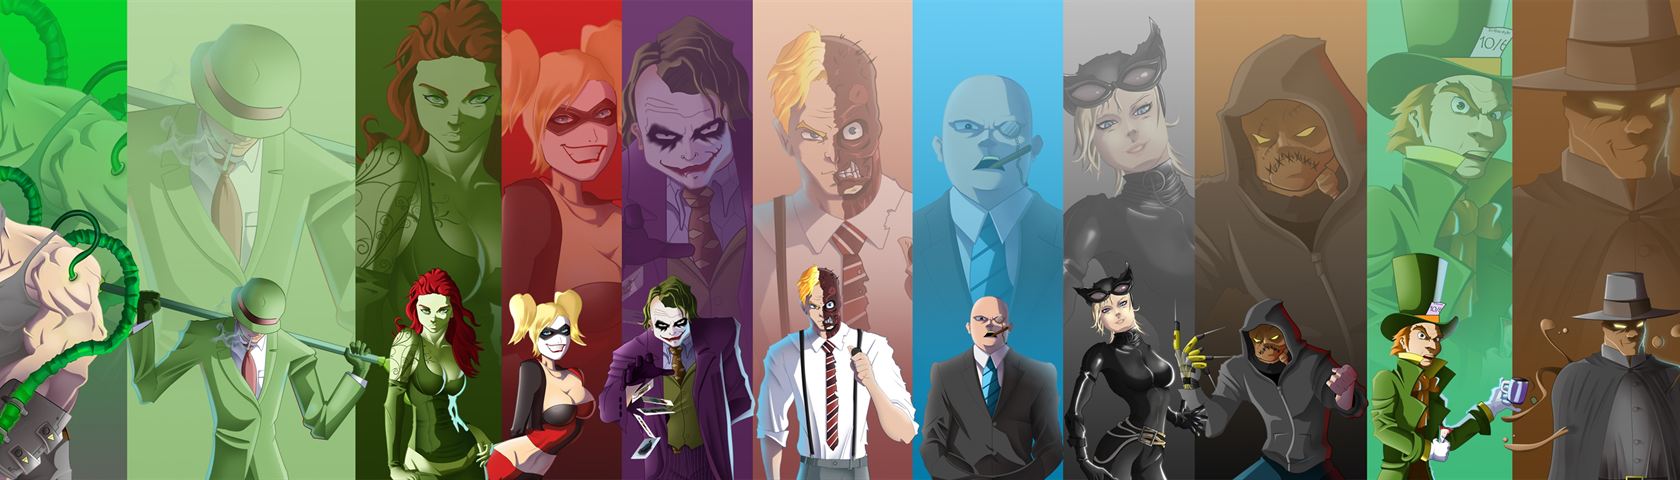 Batman Villains - All Batman Villains - HD Wallpaper 